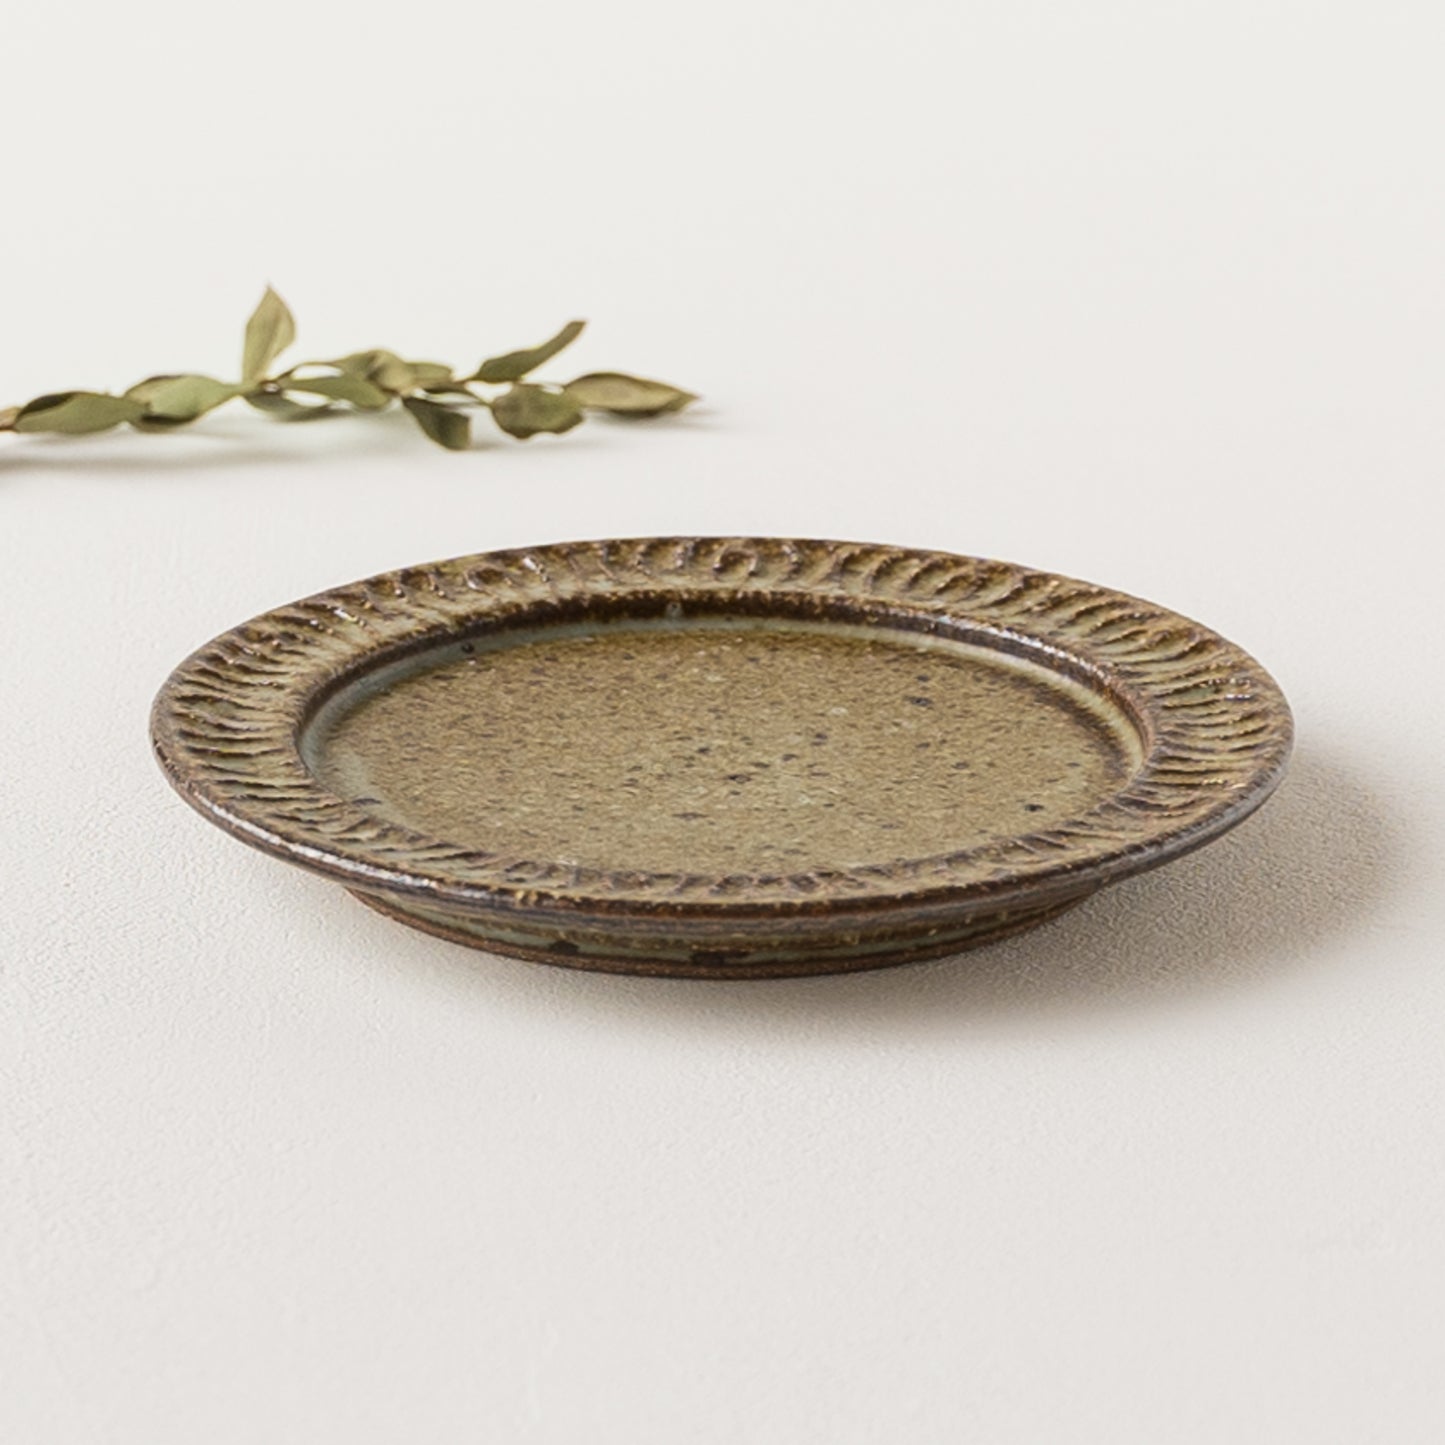 取り皿にぴったりな伊藤豊さんの花紋の4.5寸プレート